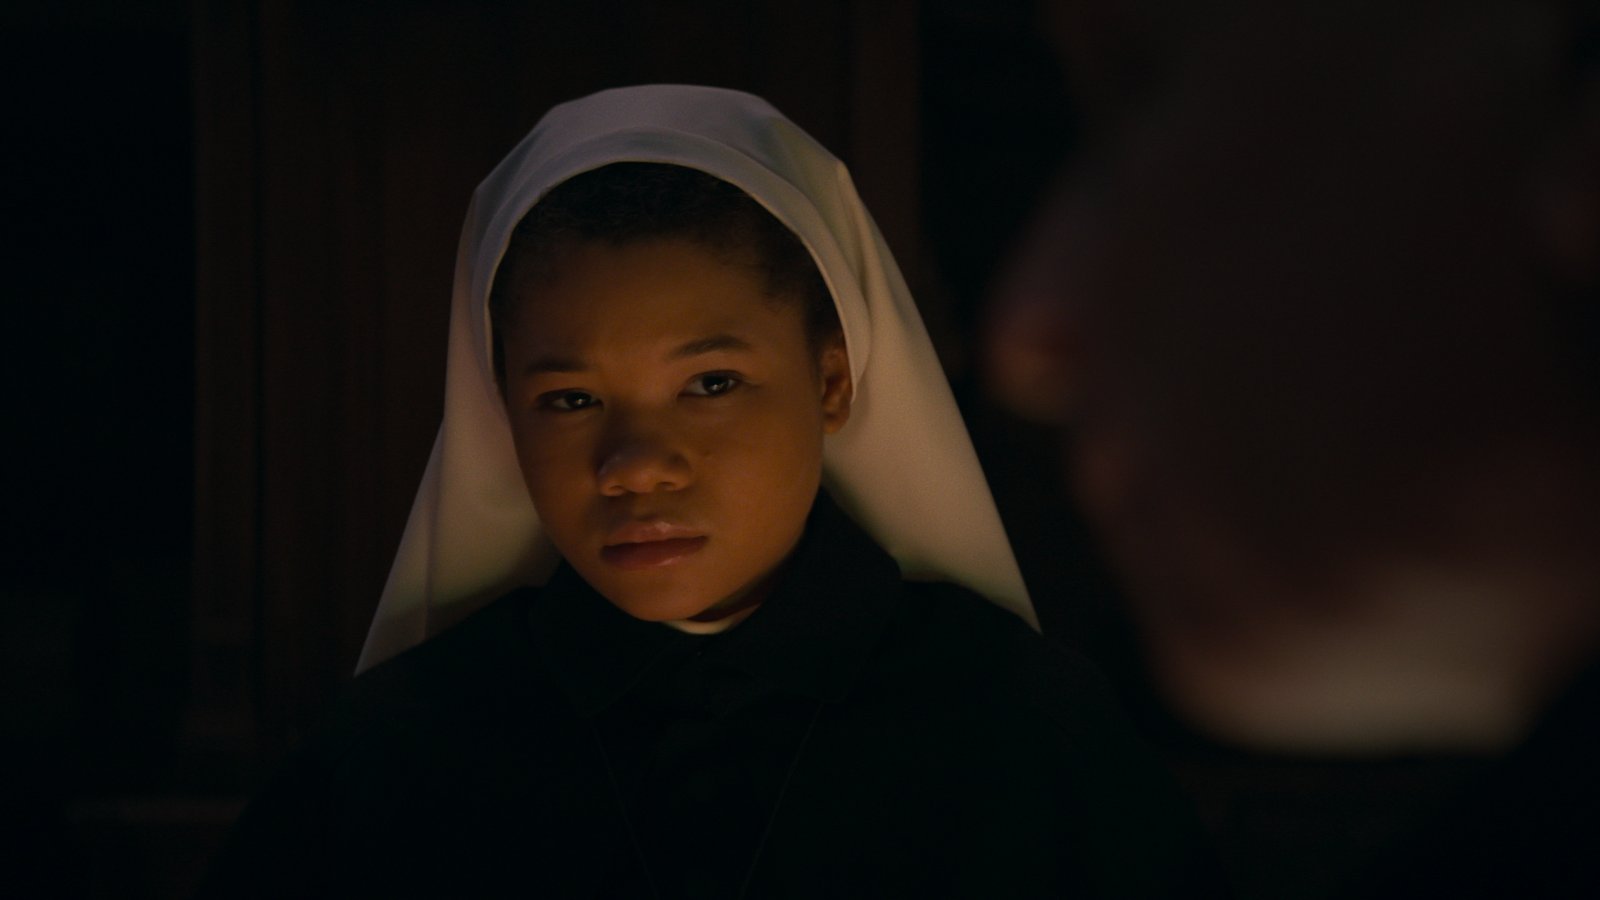 The Nun 2 ancora primo al box office USA, debutto fiacco per I mercen4ri - Expendables